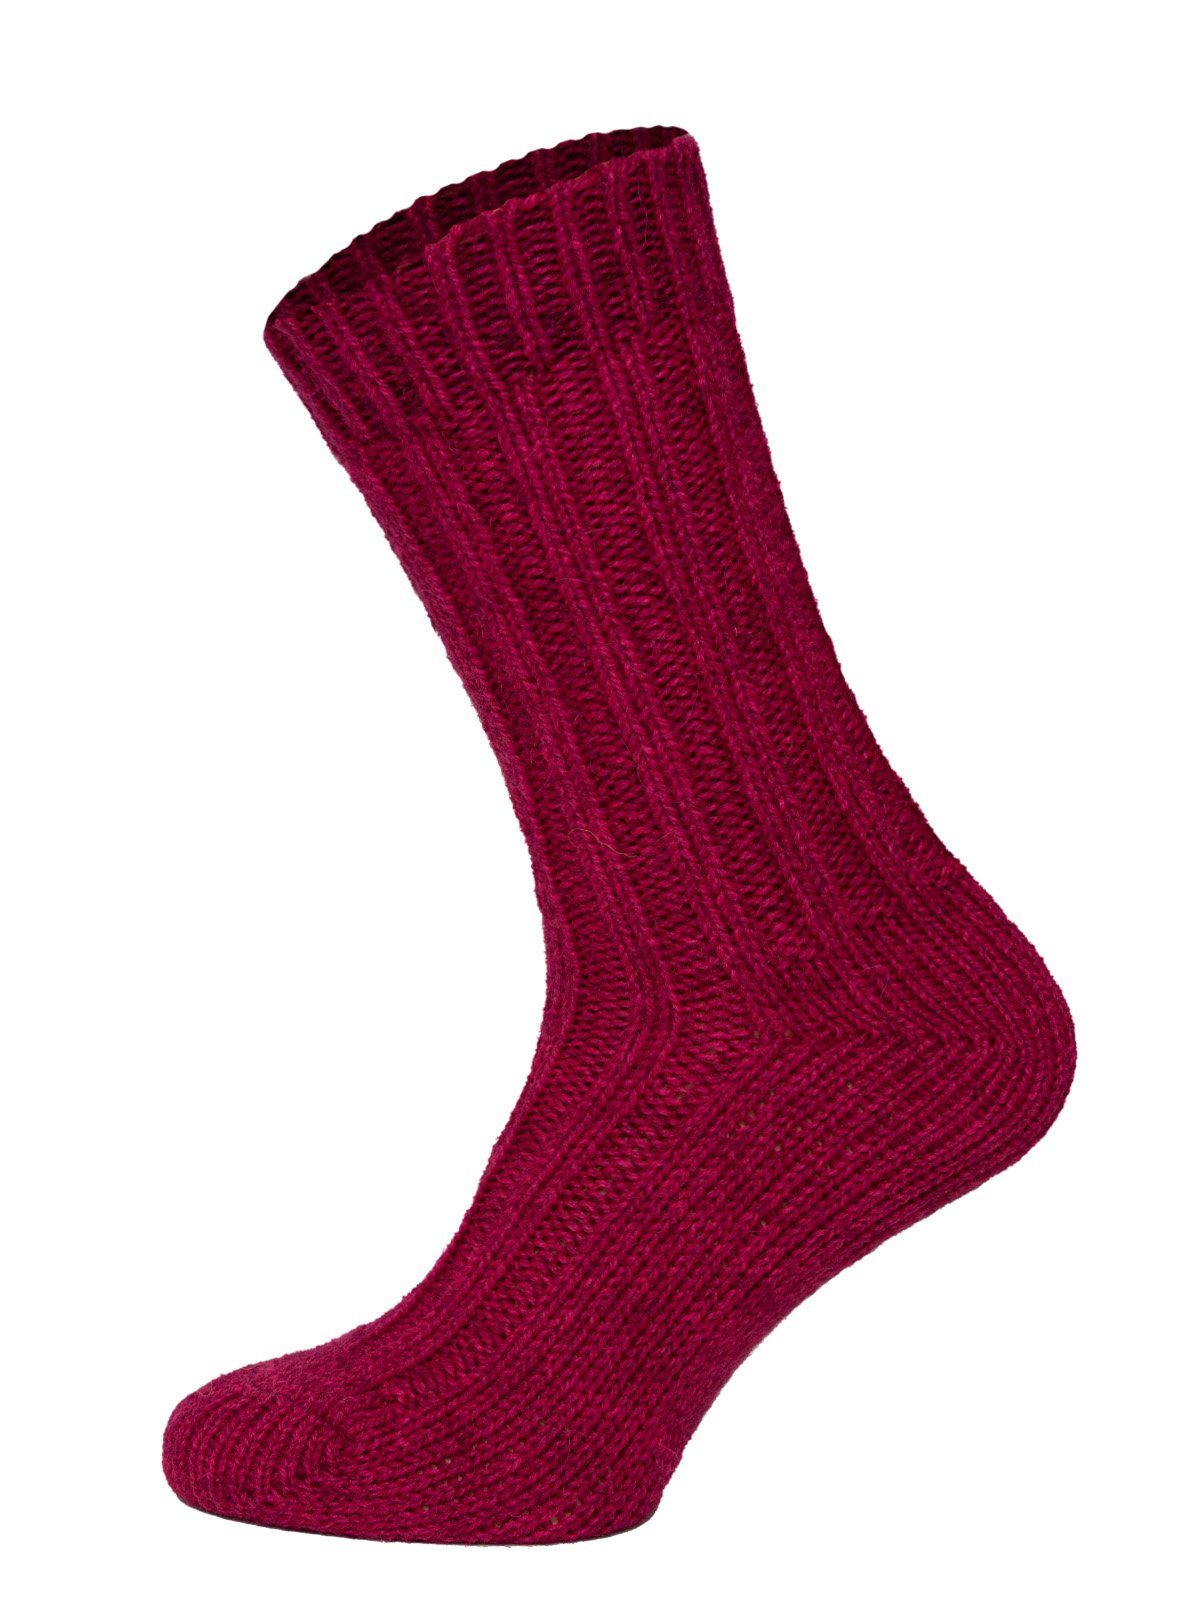 HomeOfSocks Socken Bunte Socken mit Umschlag mit Wolle und Alpakawolle Strapazierfähige und warme Socken mit 40% Wollanteil und Alpakawolle Pink